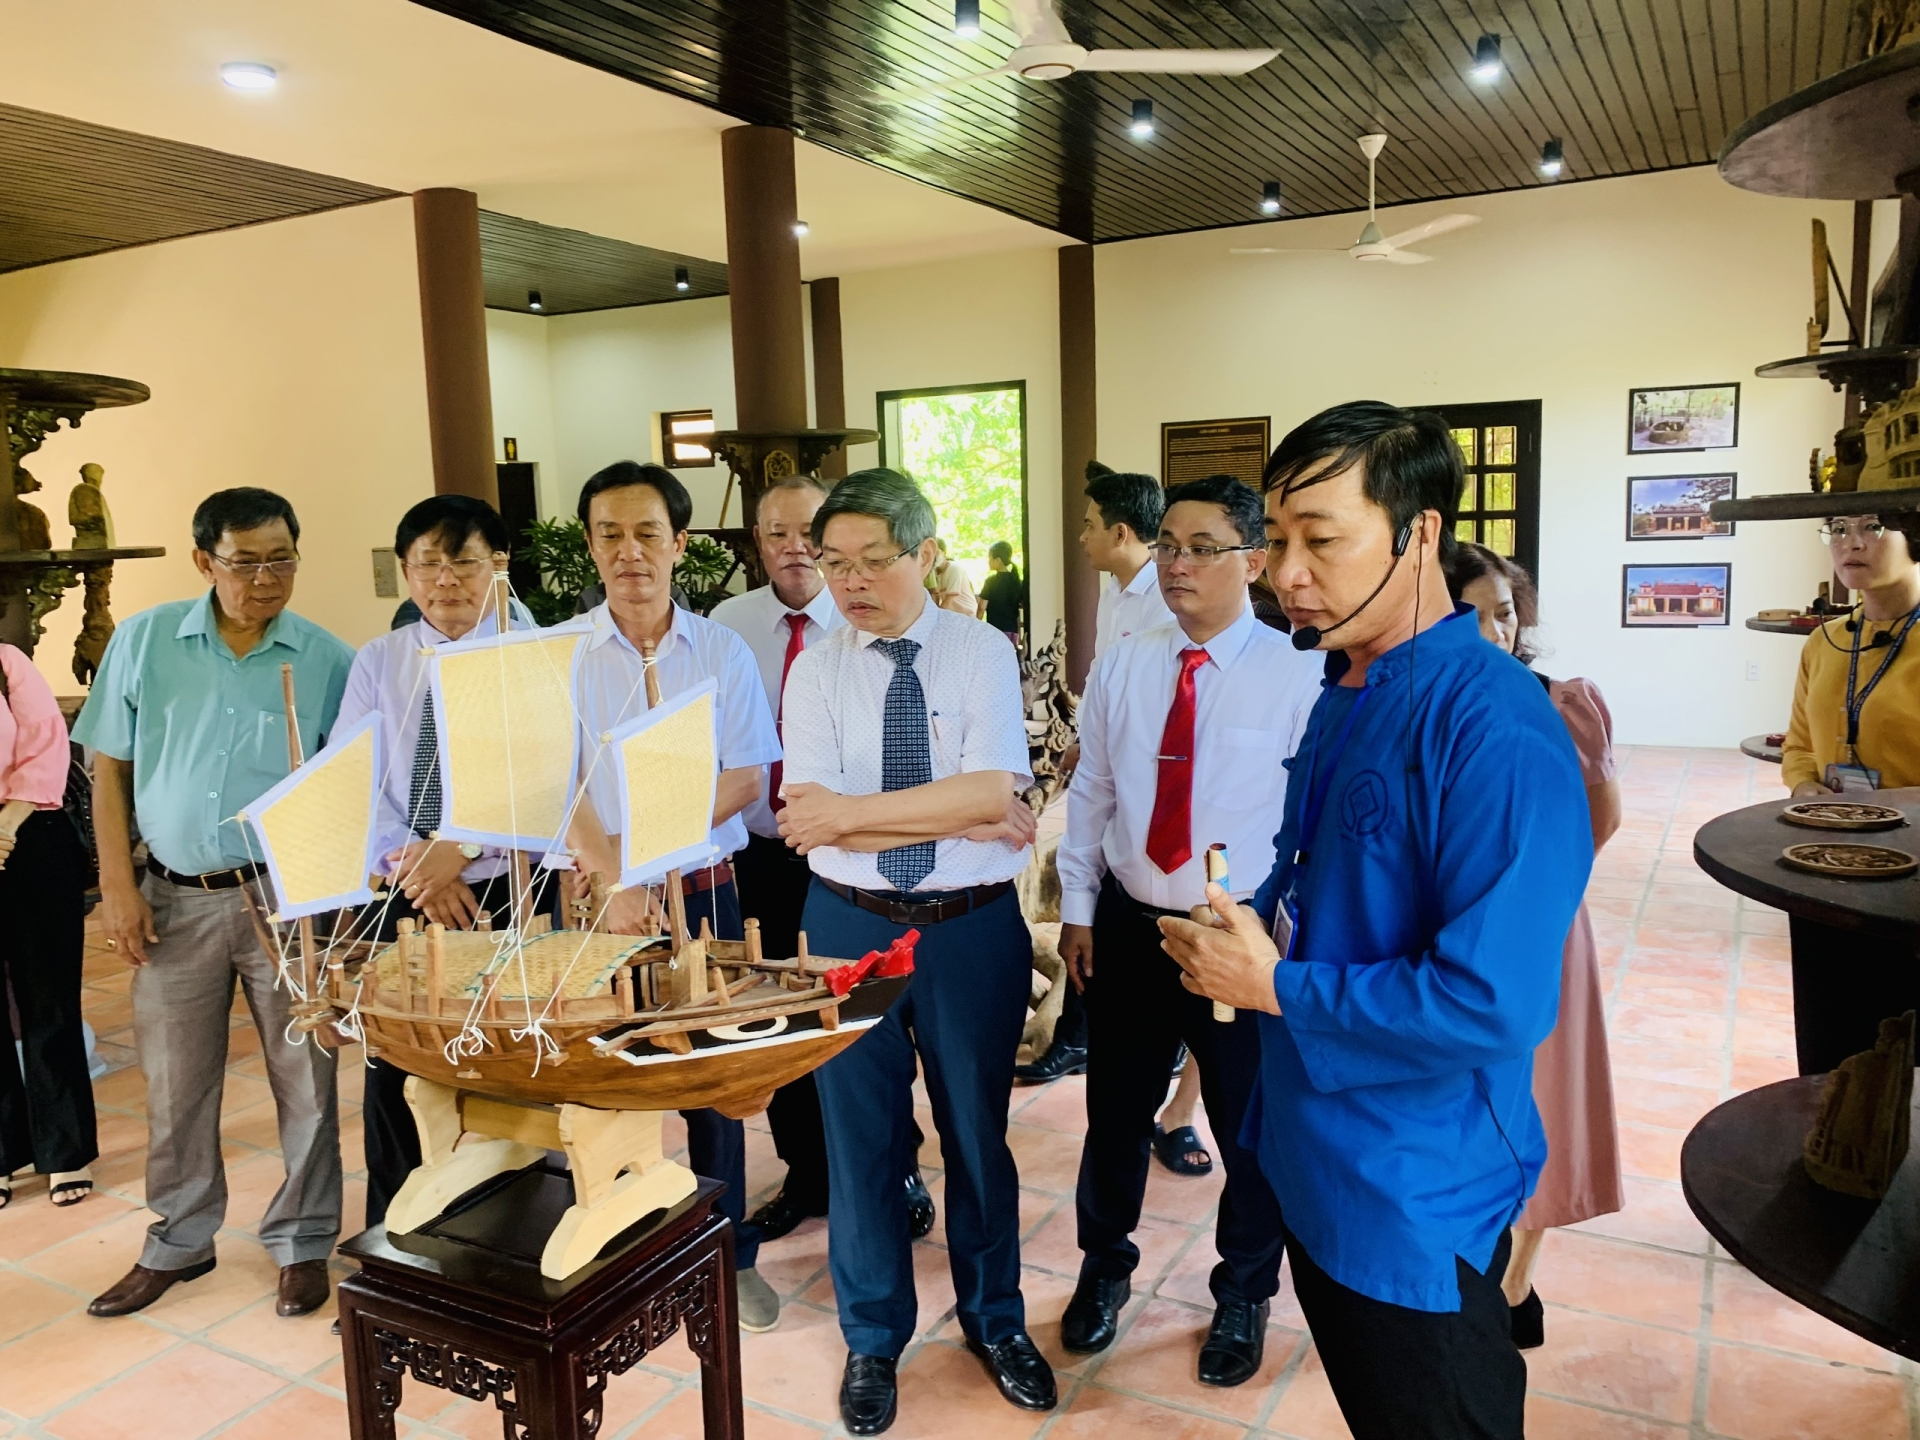 Cũng trong sự kiện lần này, Ủy ban Nhân dân thành phố Hội An chính thức khai trương hoạt động Hướng dẫn tham quan Làng mộc Kim Bồng.